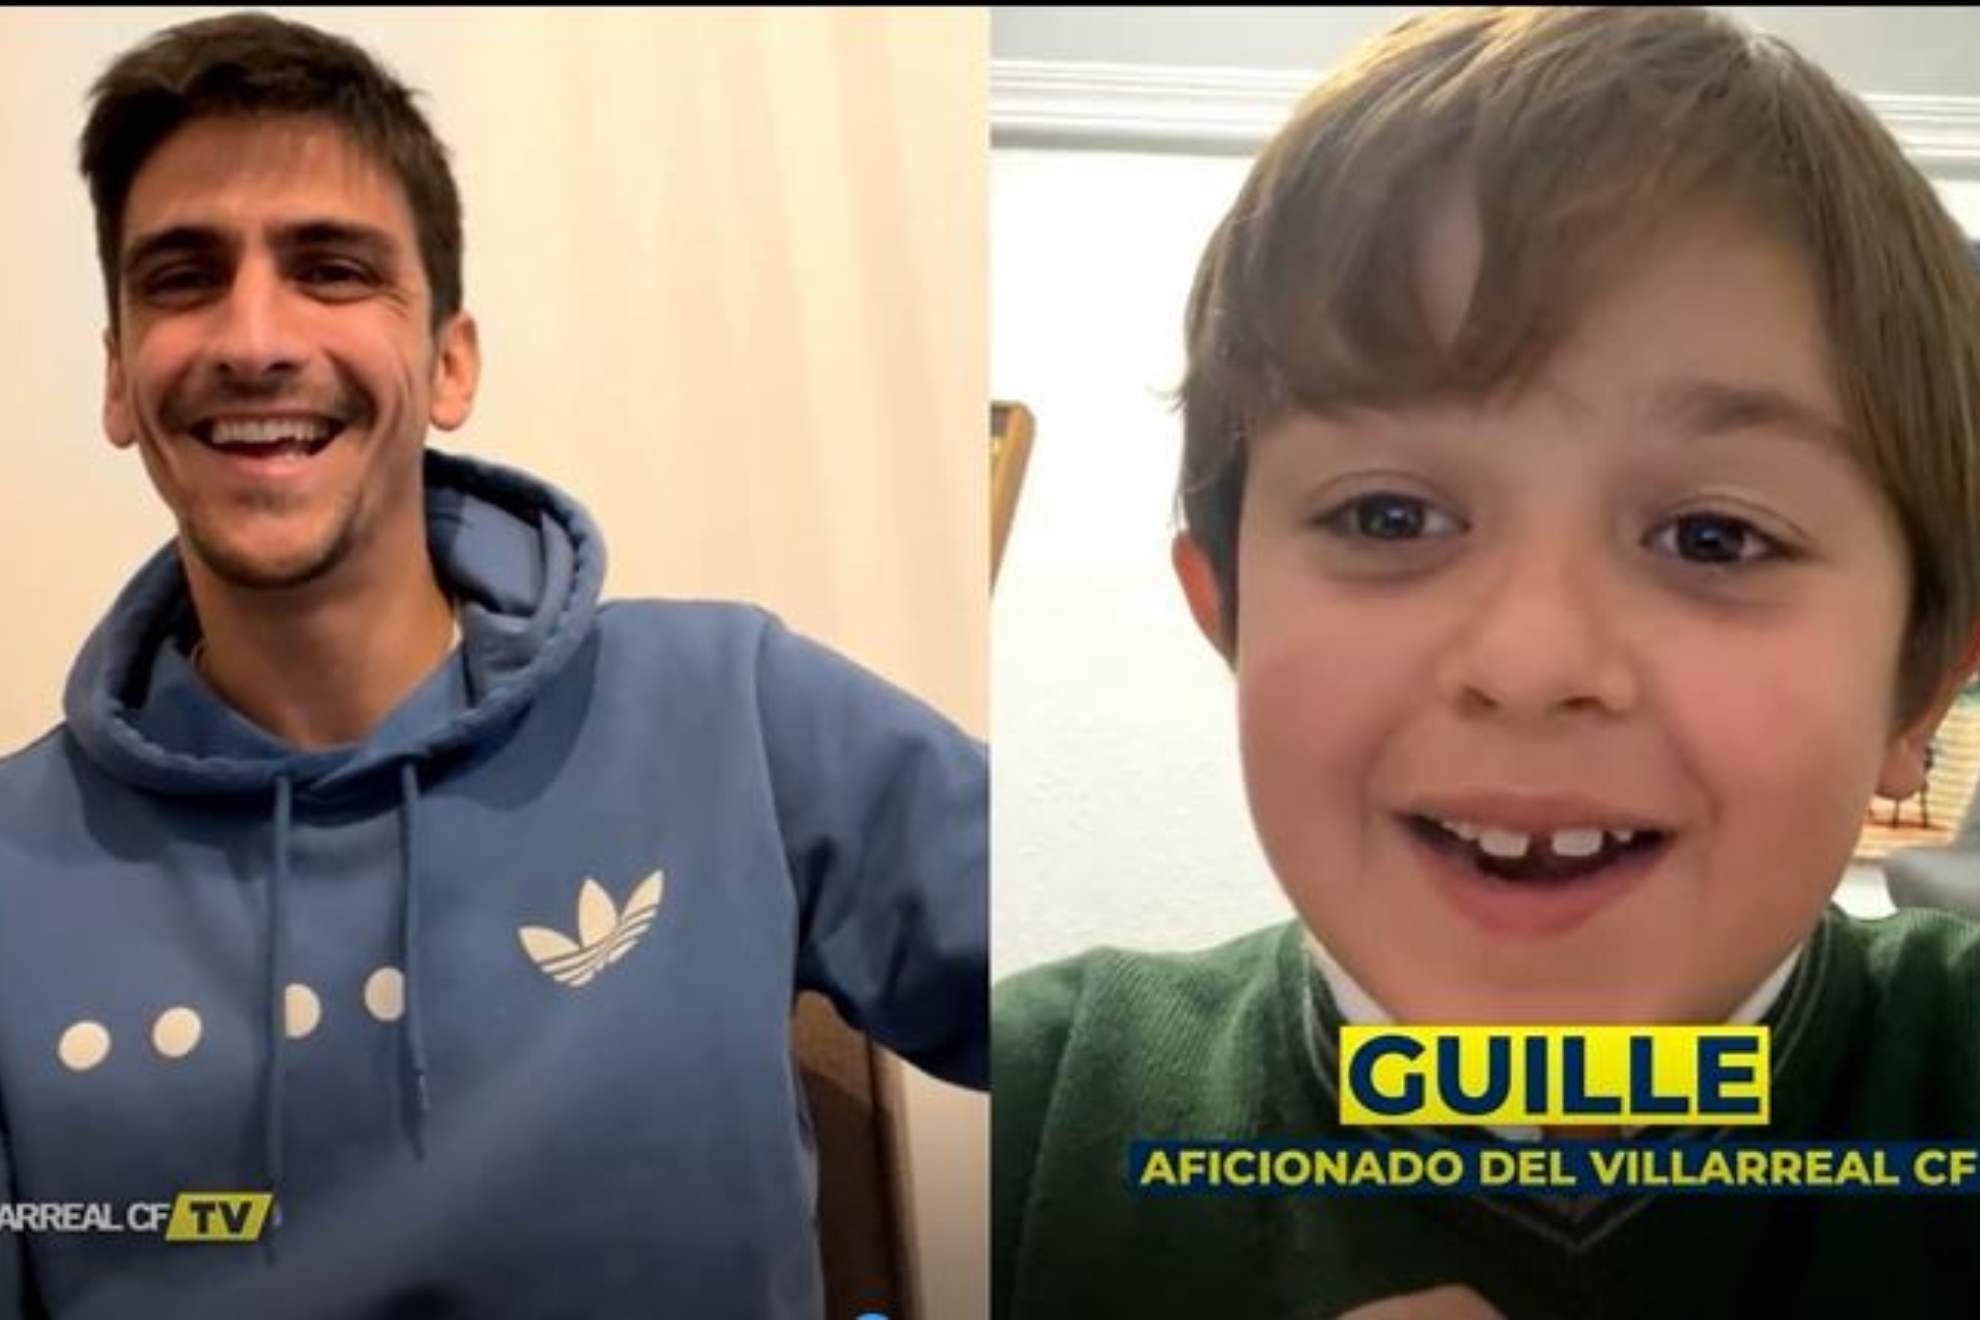 La sorpresa de Gerard Moreno a Guille que se hizo del Villarreal por sus problemas de visión